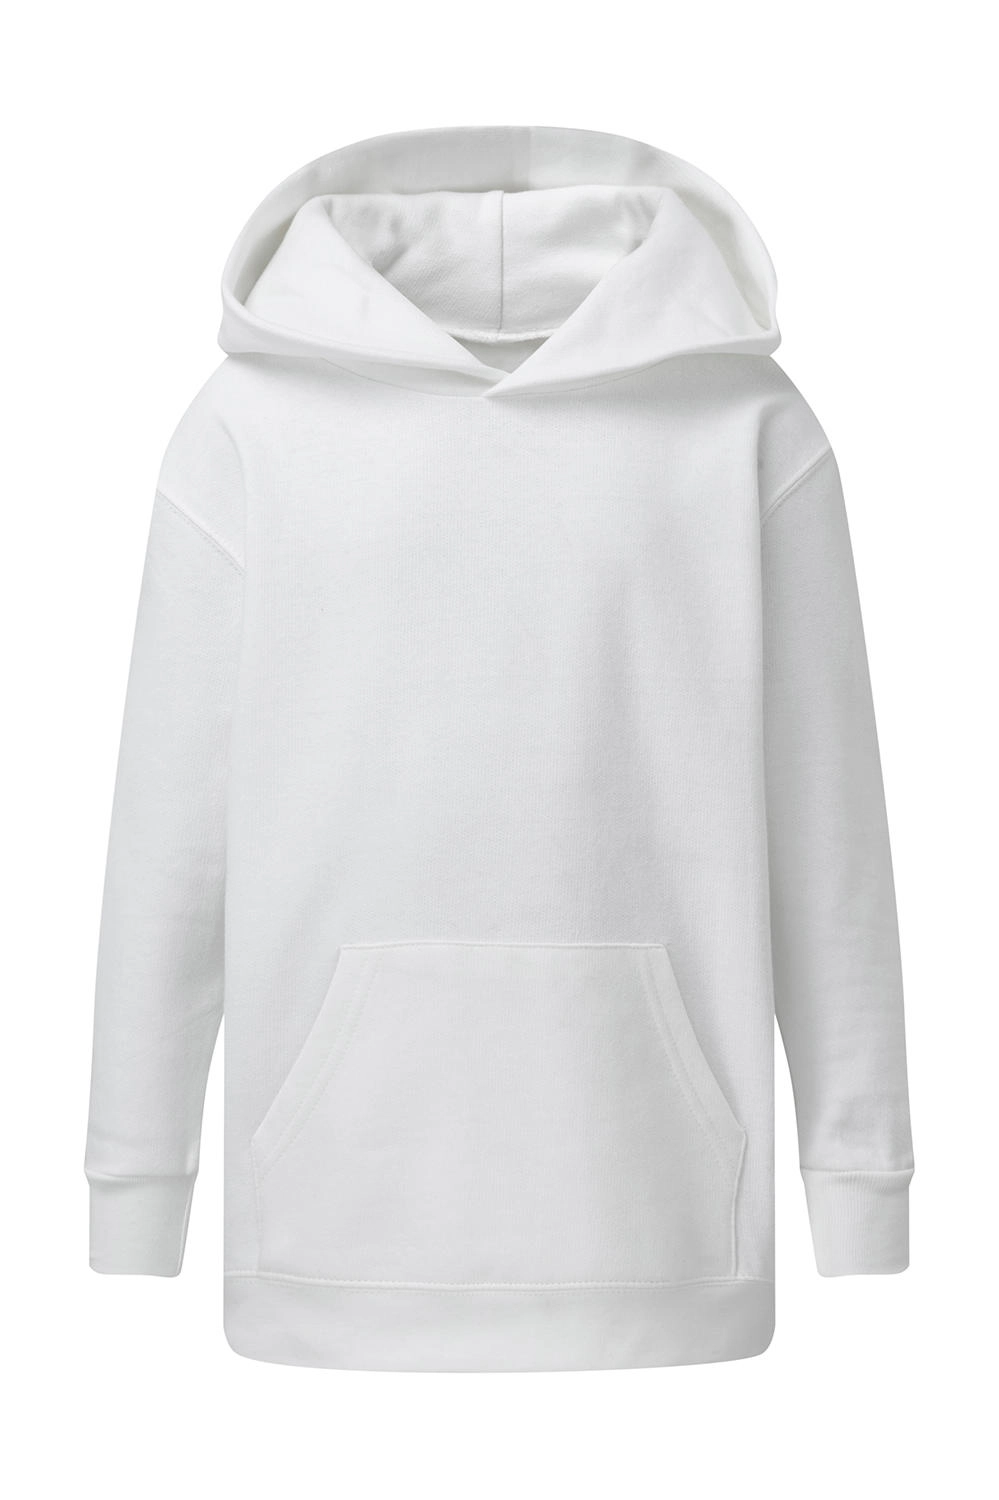 Hooded Sweatshirt Kids zum Besticken und Bedrucken in der Farbe White mit Ihren Logo, Schriftzug oder Motiv.